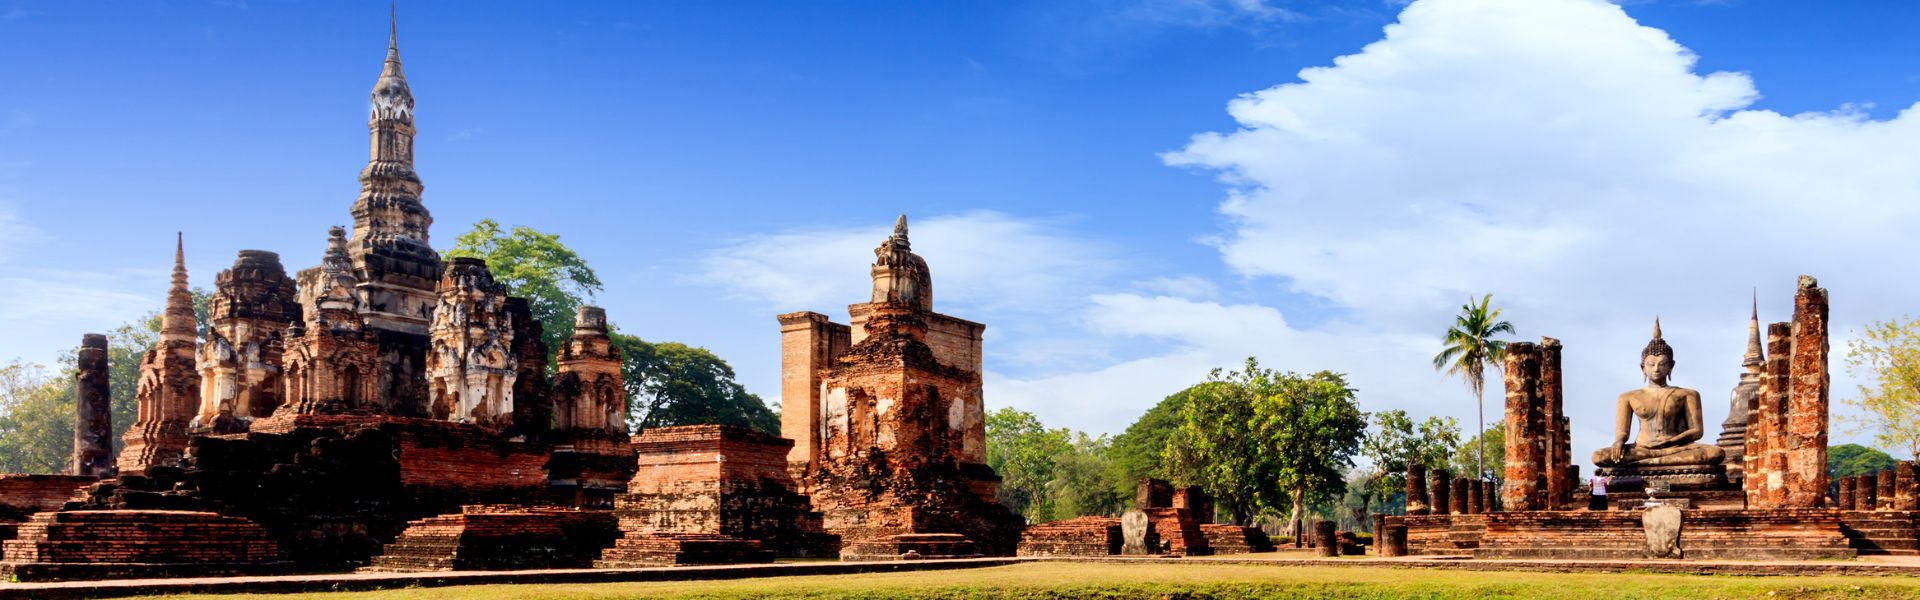 Sukhothai - Consejos de viaje | Guía de viajes a Tailandia